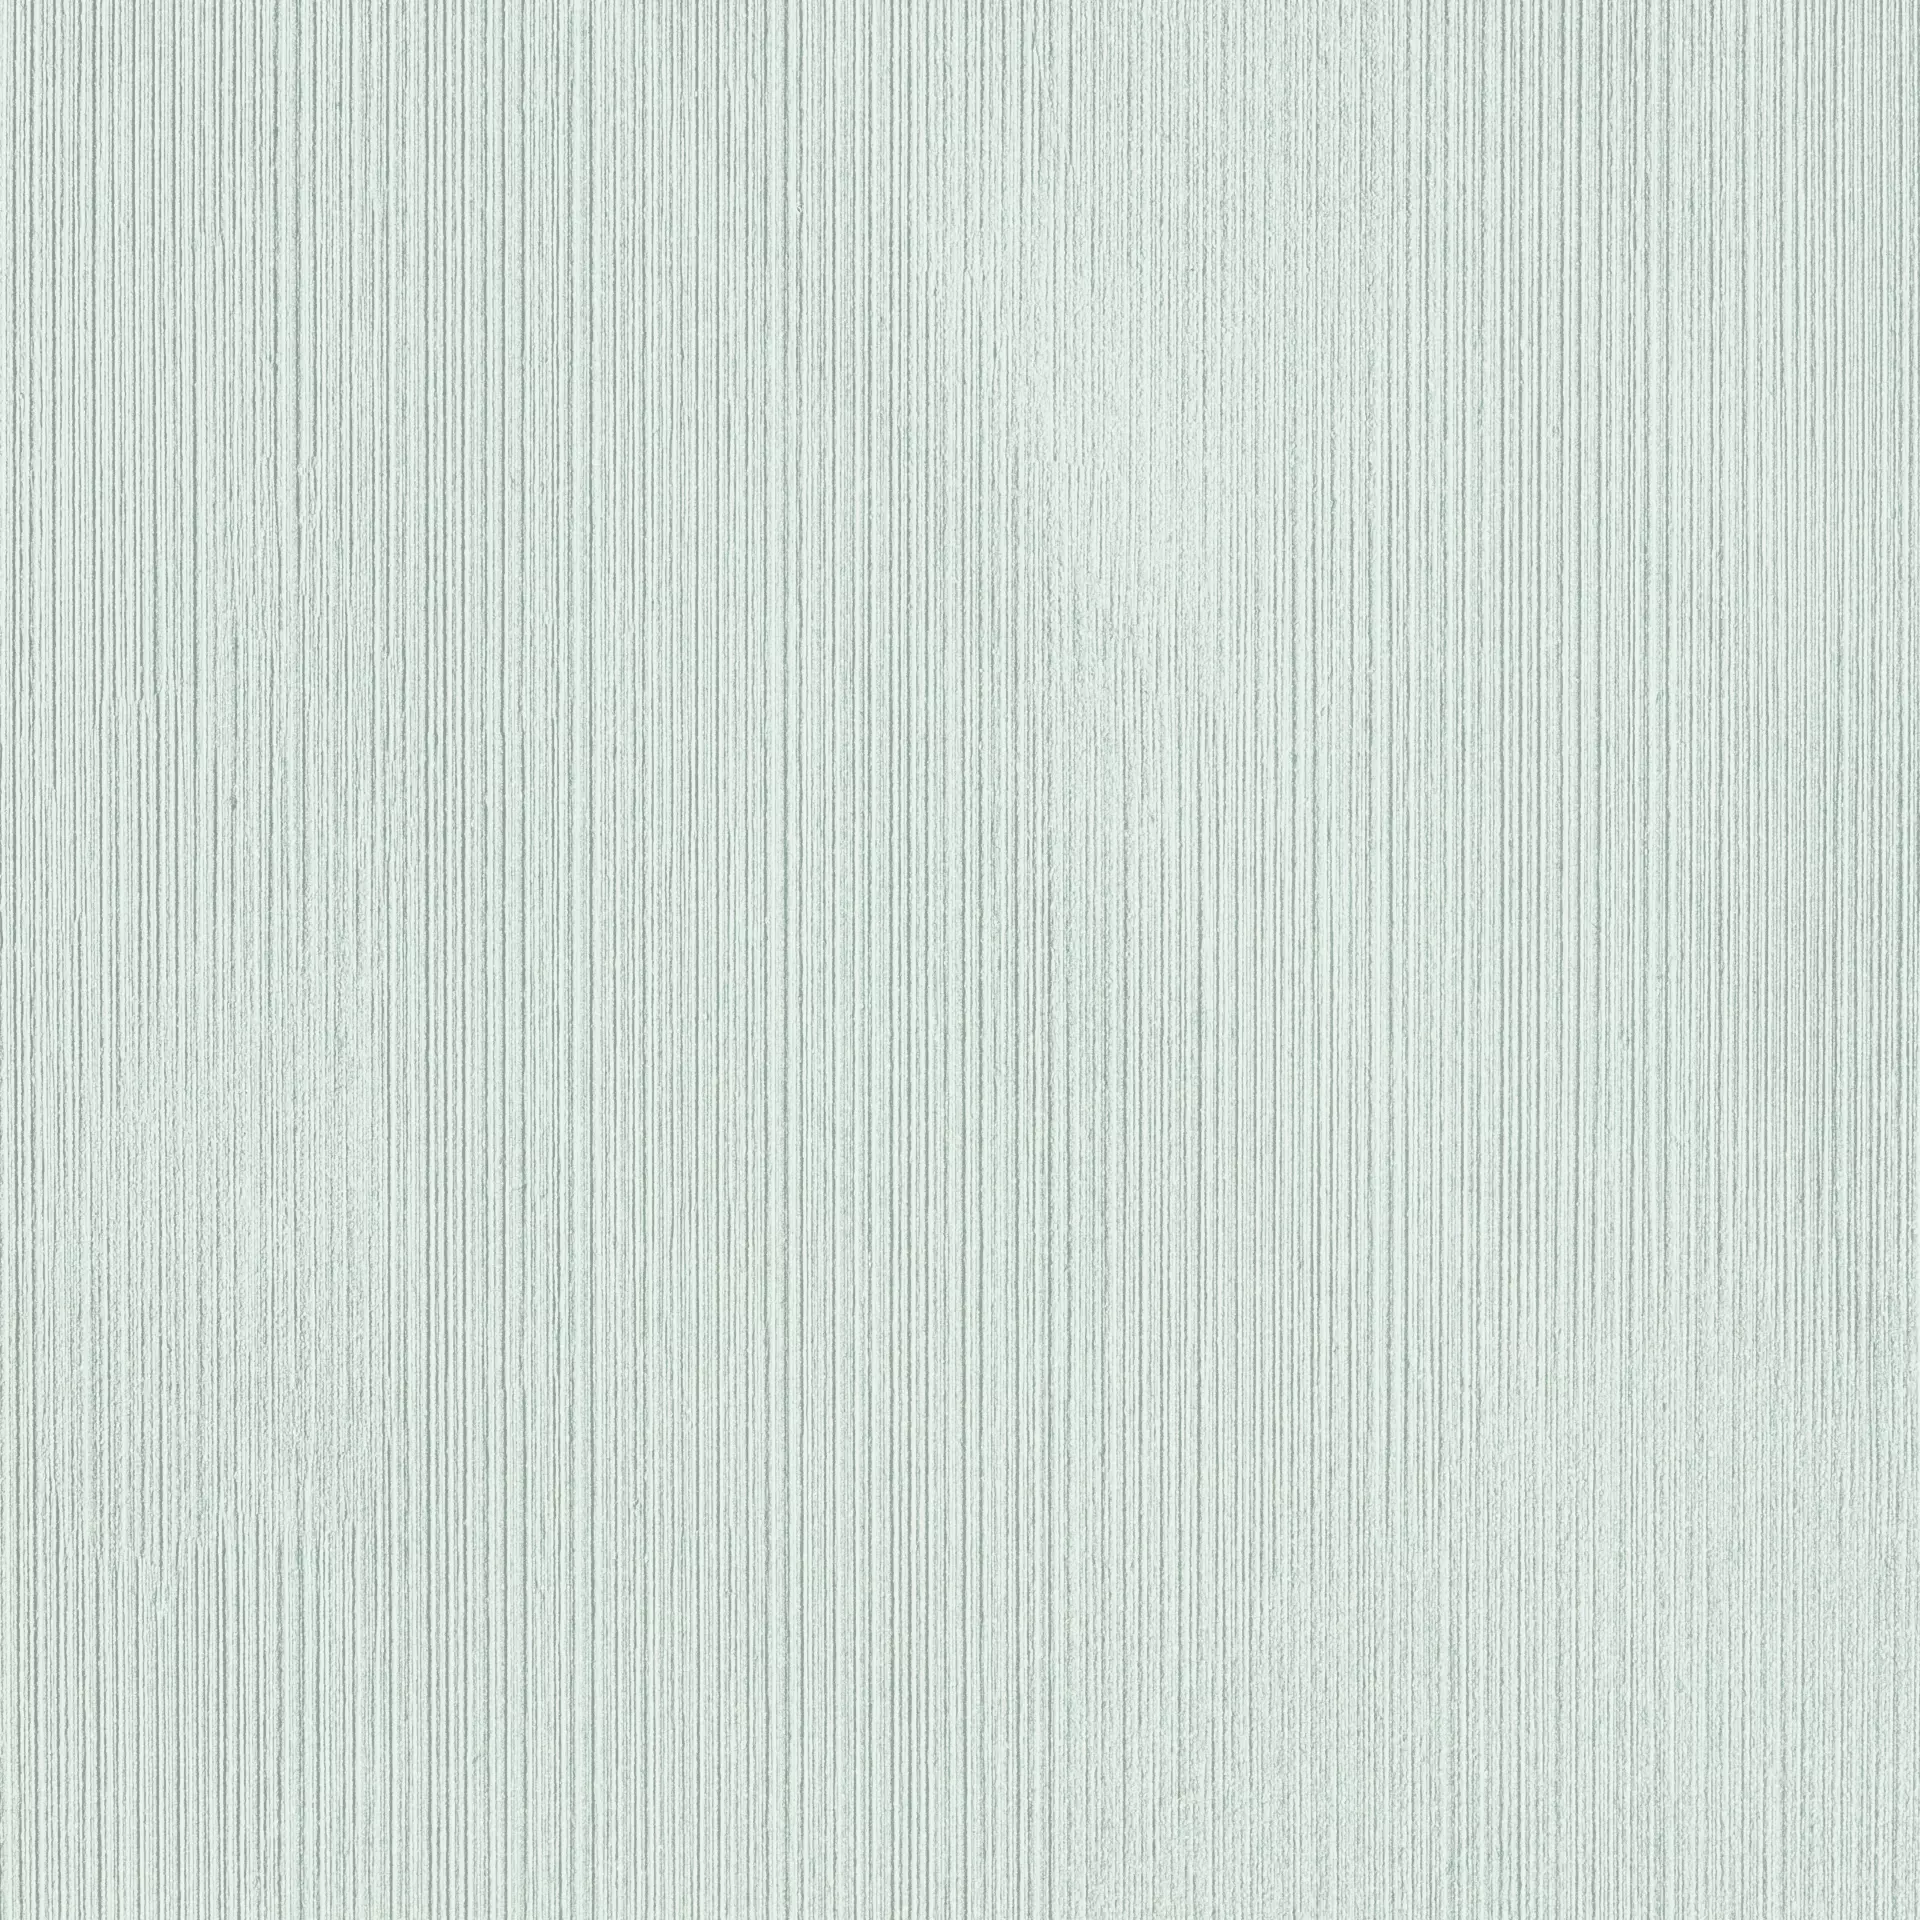 Rak Curton White Natural – Matt White A2D06PDCNWHEMMLN1R natur matt 60x60cm Decor Line rektifiziert 9mm